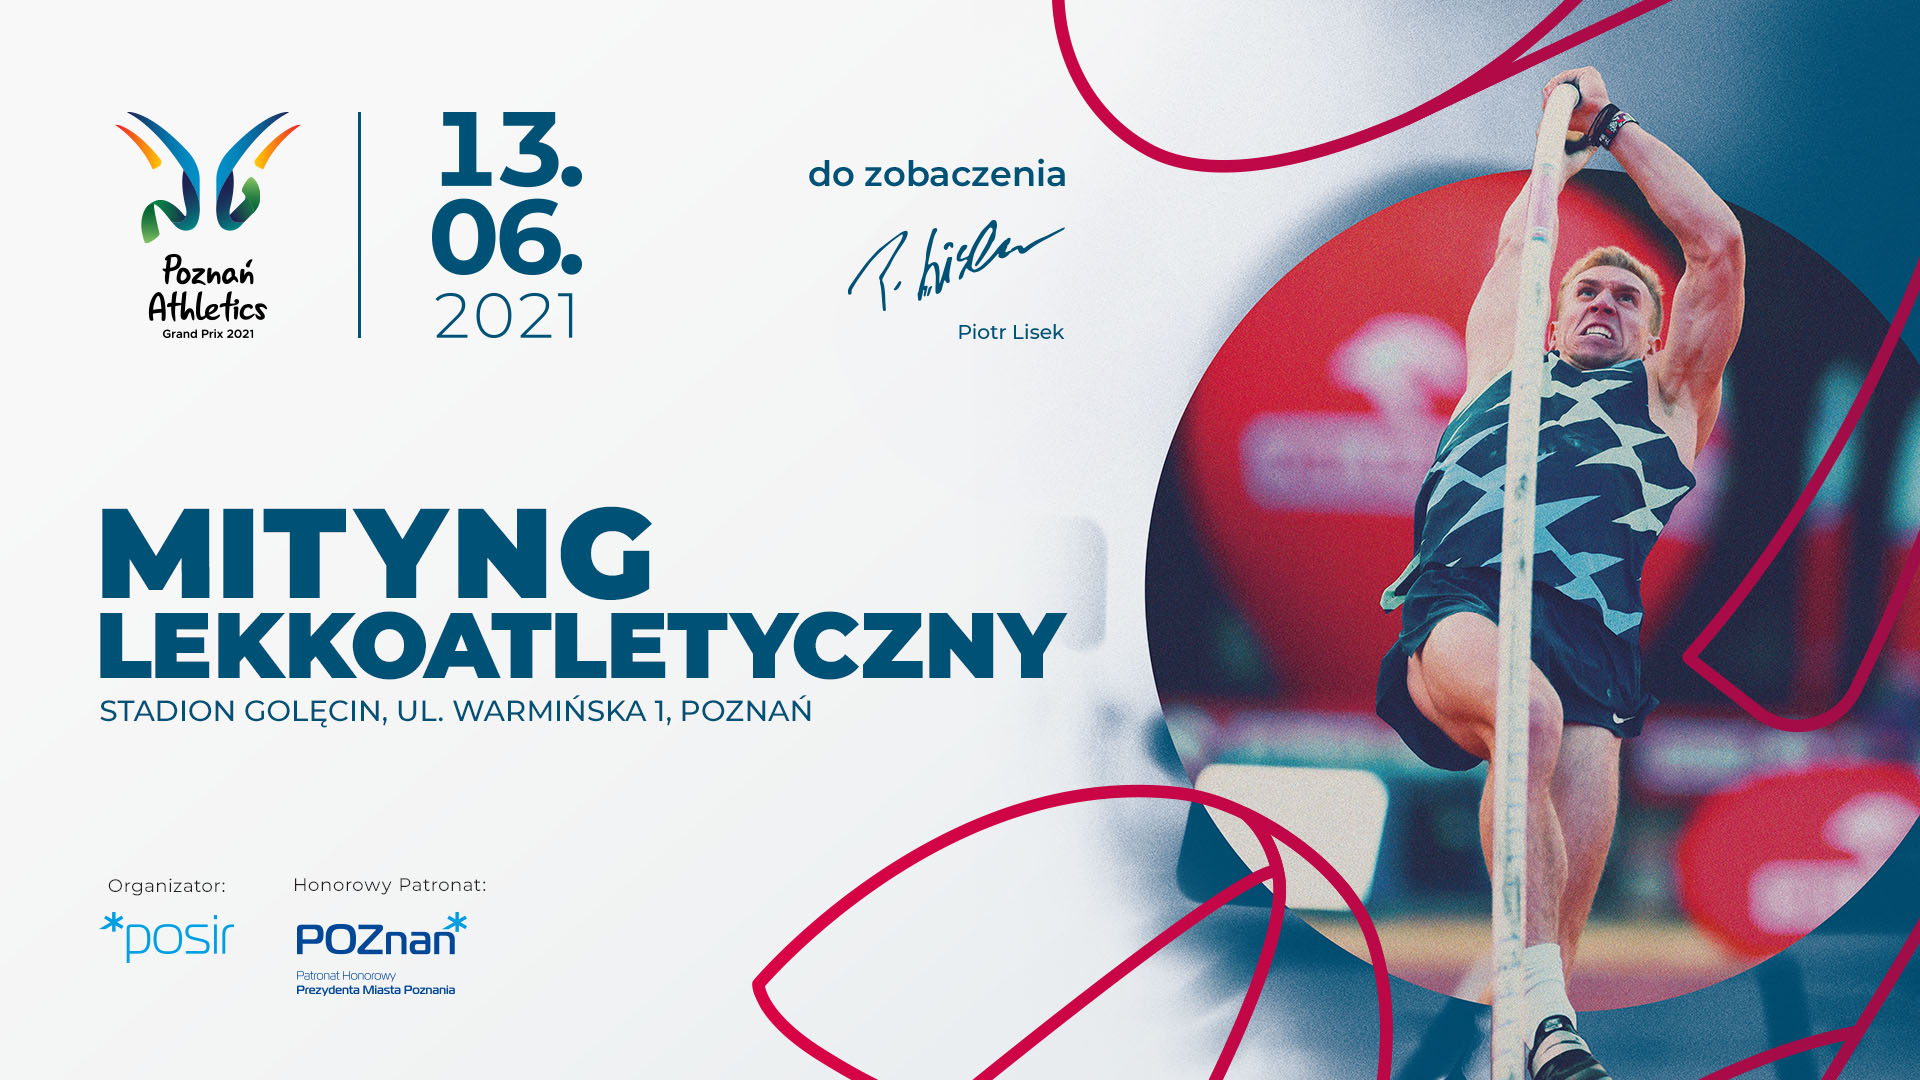 Plakat imprezy: Piotr Lisek skaczący o tyczce, napis Mityng Lekkoatletyczny Stadion Golęcin ul. Warmińska Poznań 13.06.2021 i logo imprezy